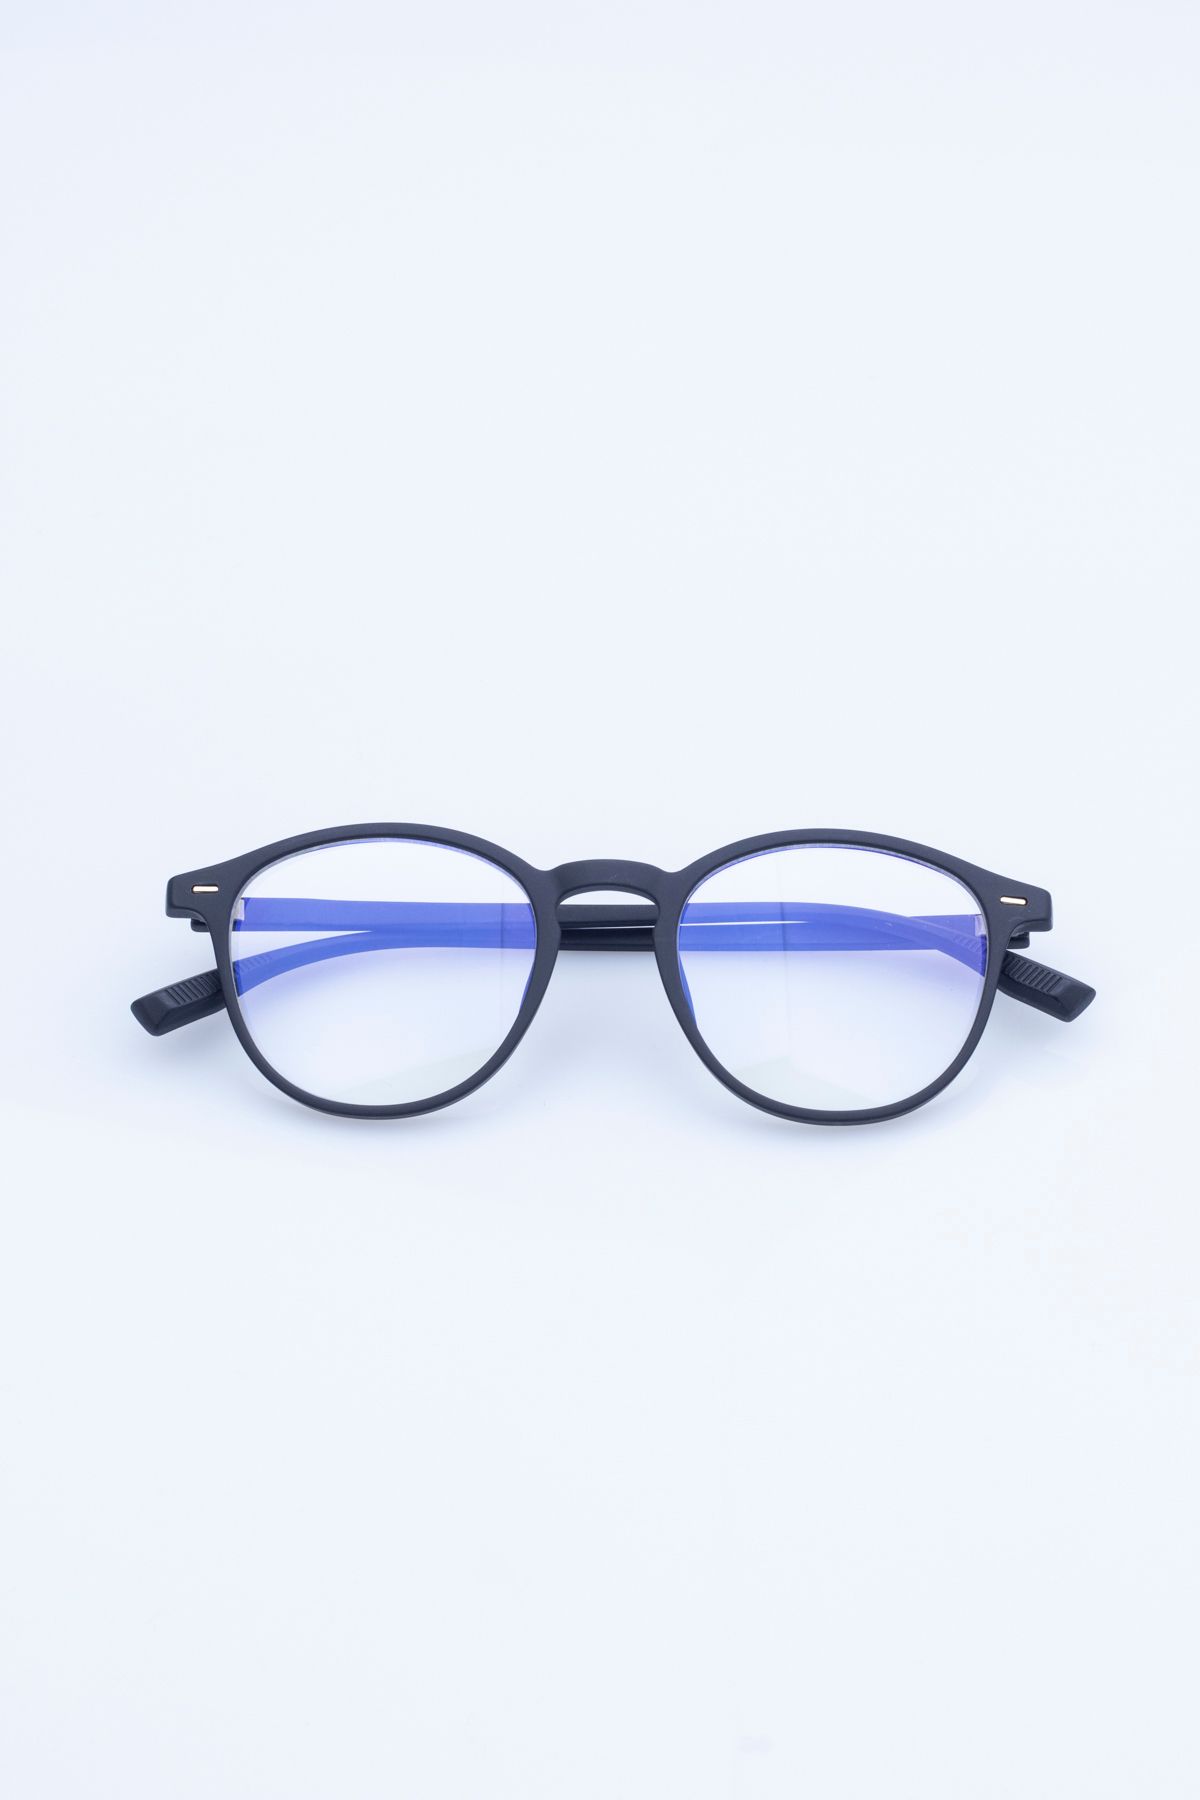 Focus On Eyewear Unisex Bilgisayar Ekran Gözlüğü